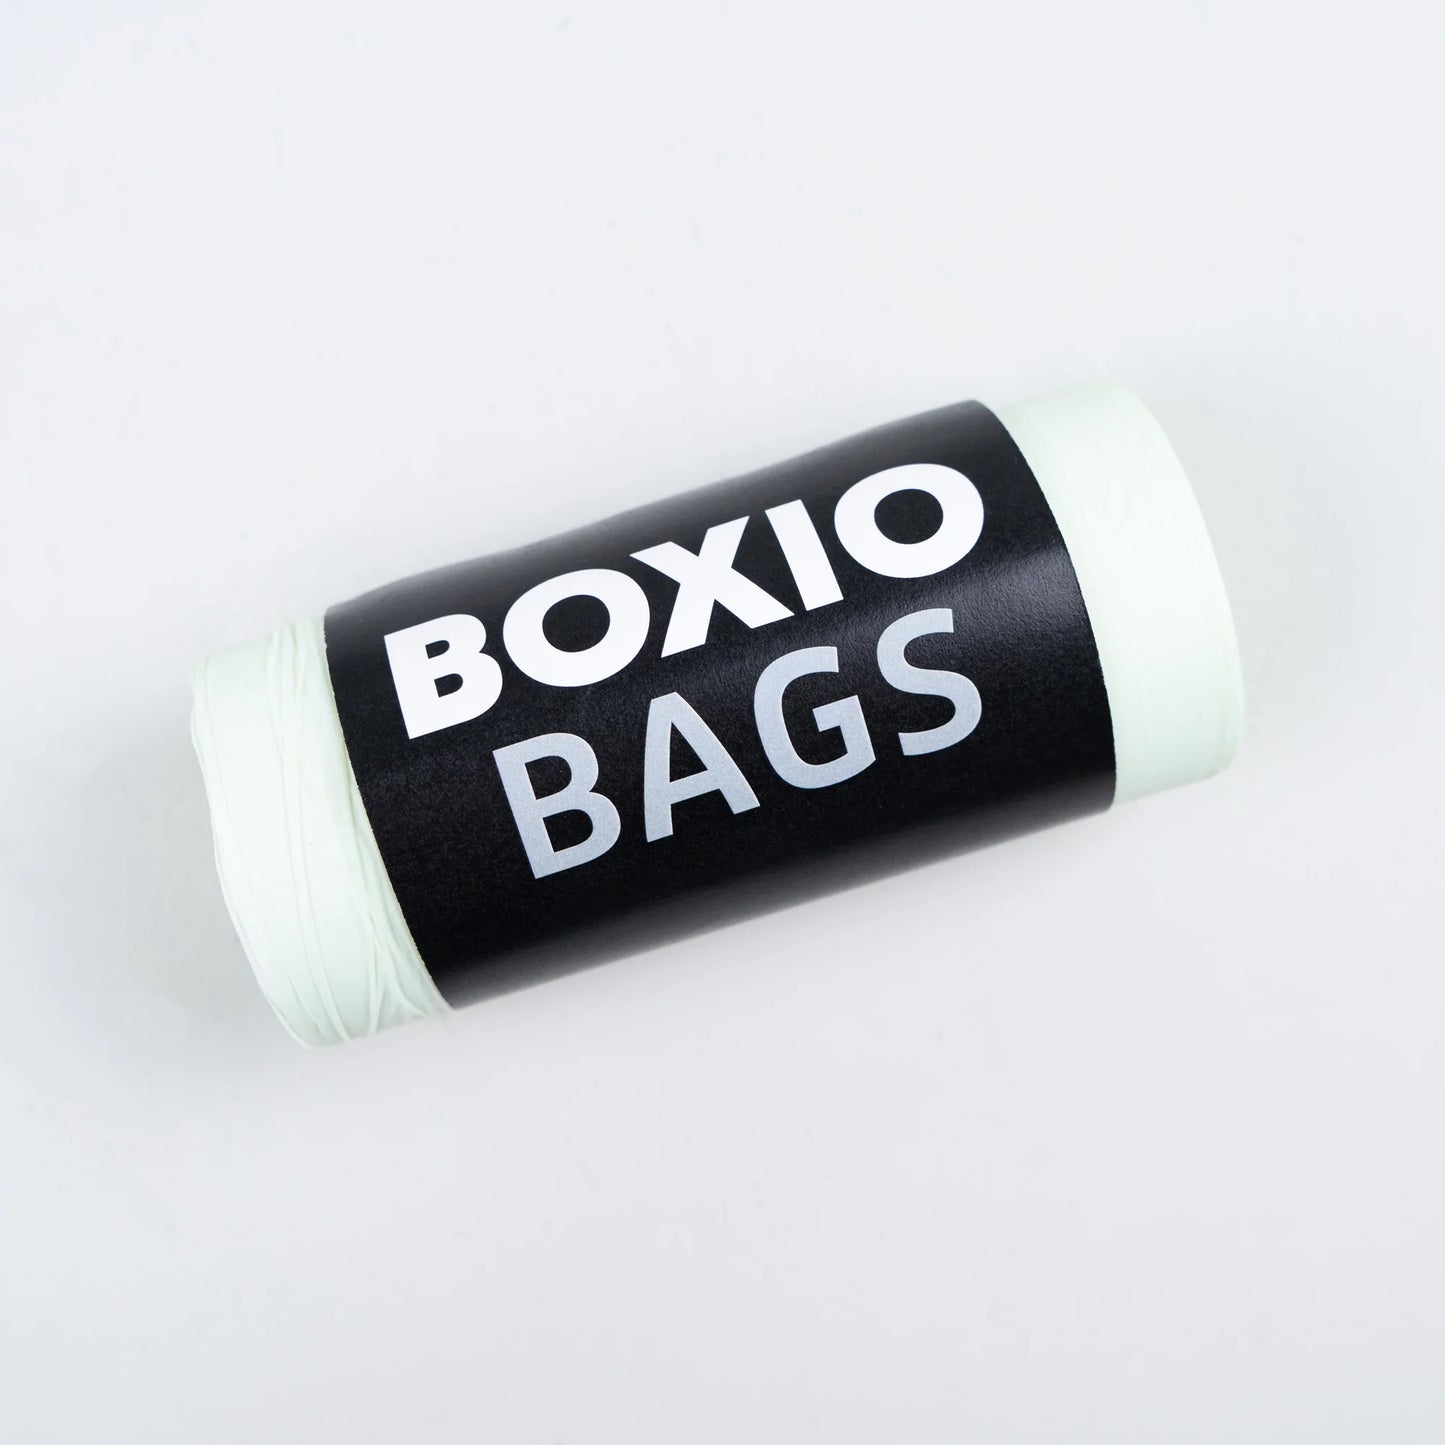 BOXIO - BIO BAGS